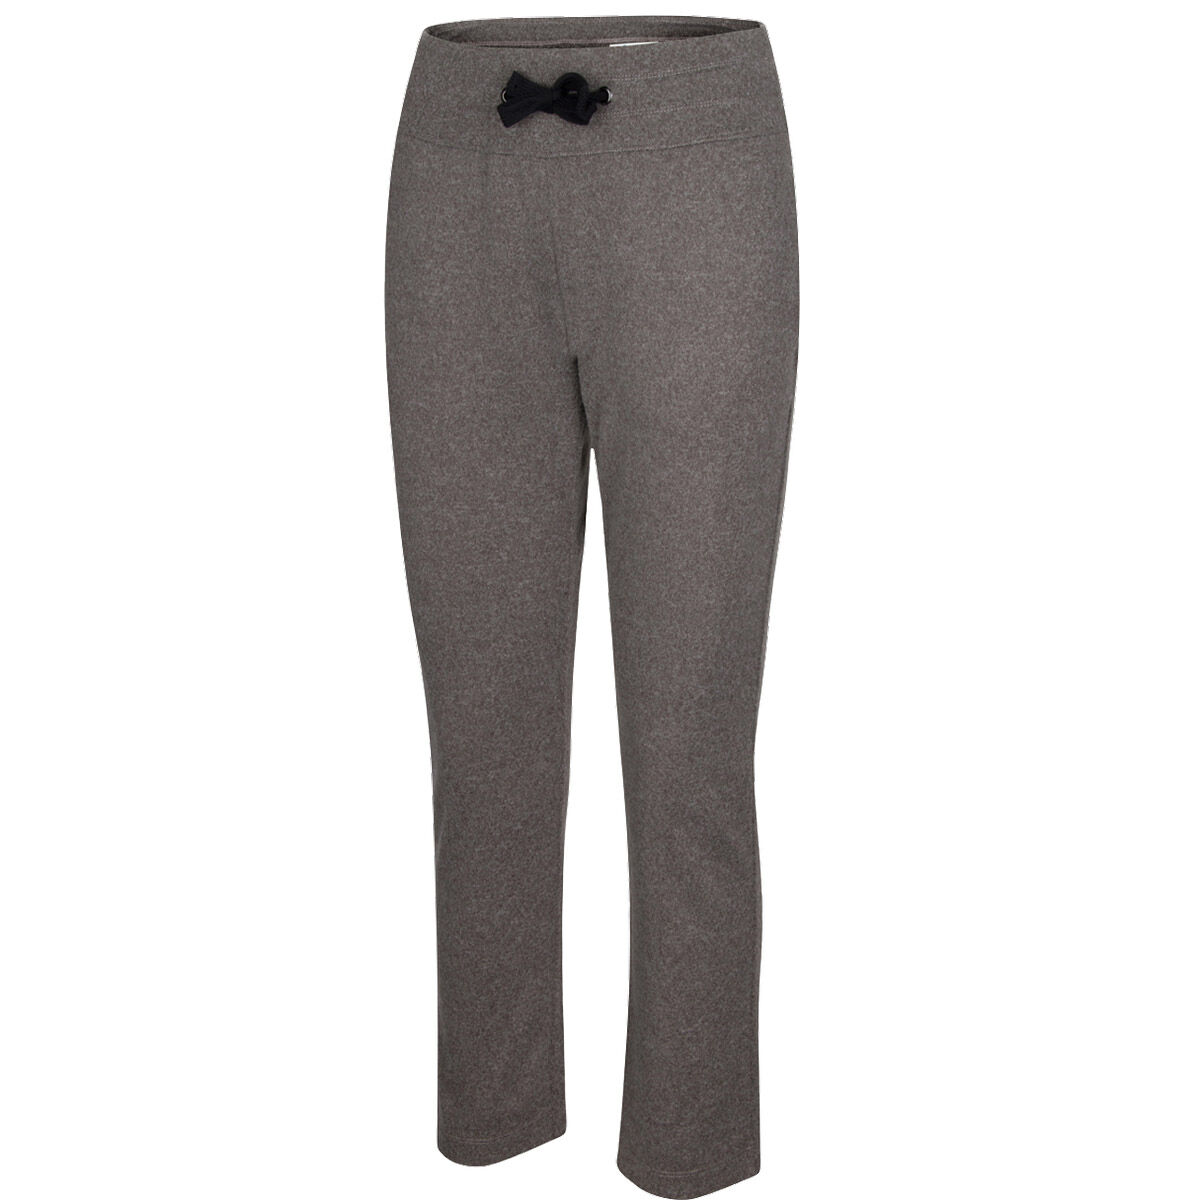 Greg Norman Men's Comfort Series Pants, Created for Macy's - Macy's